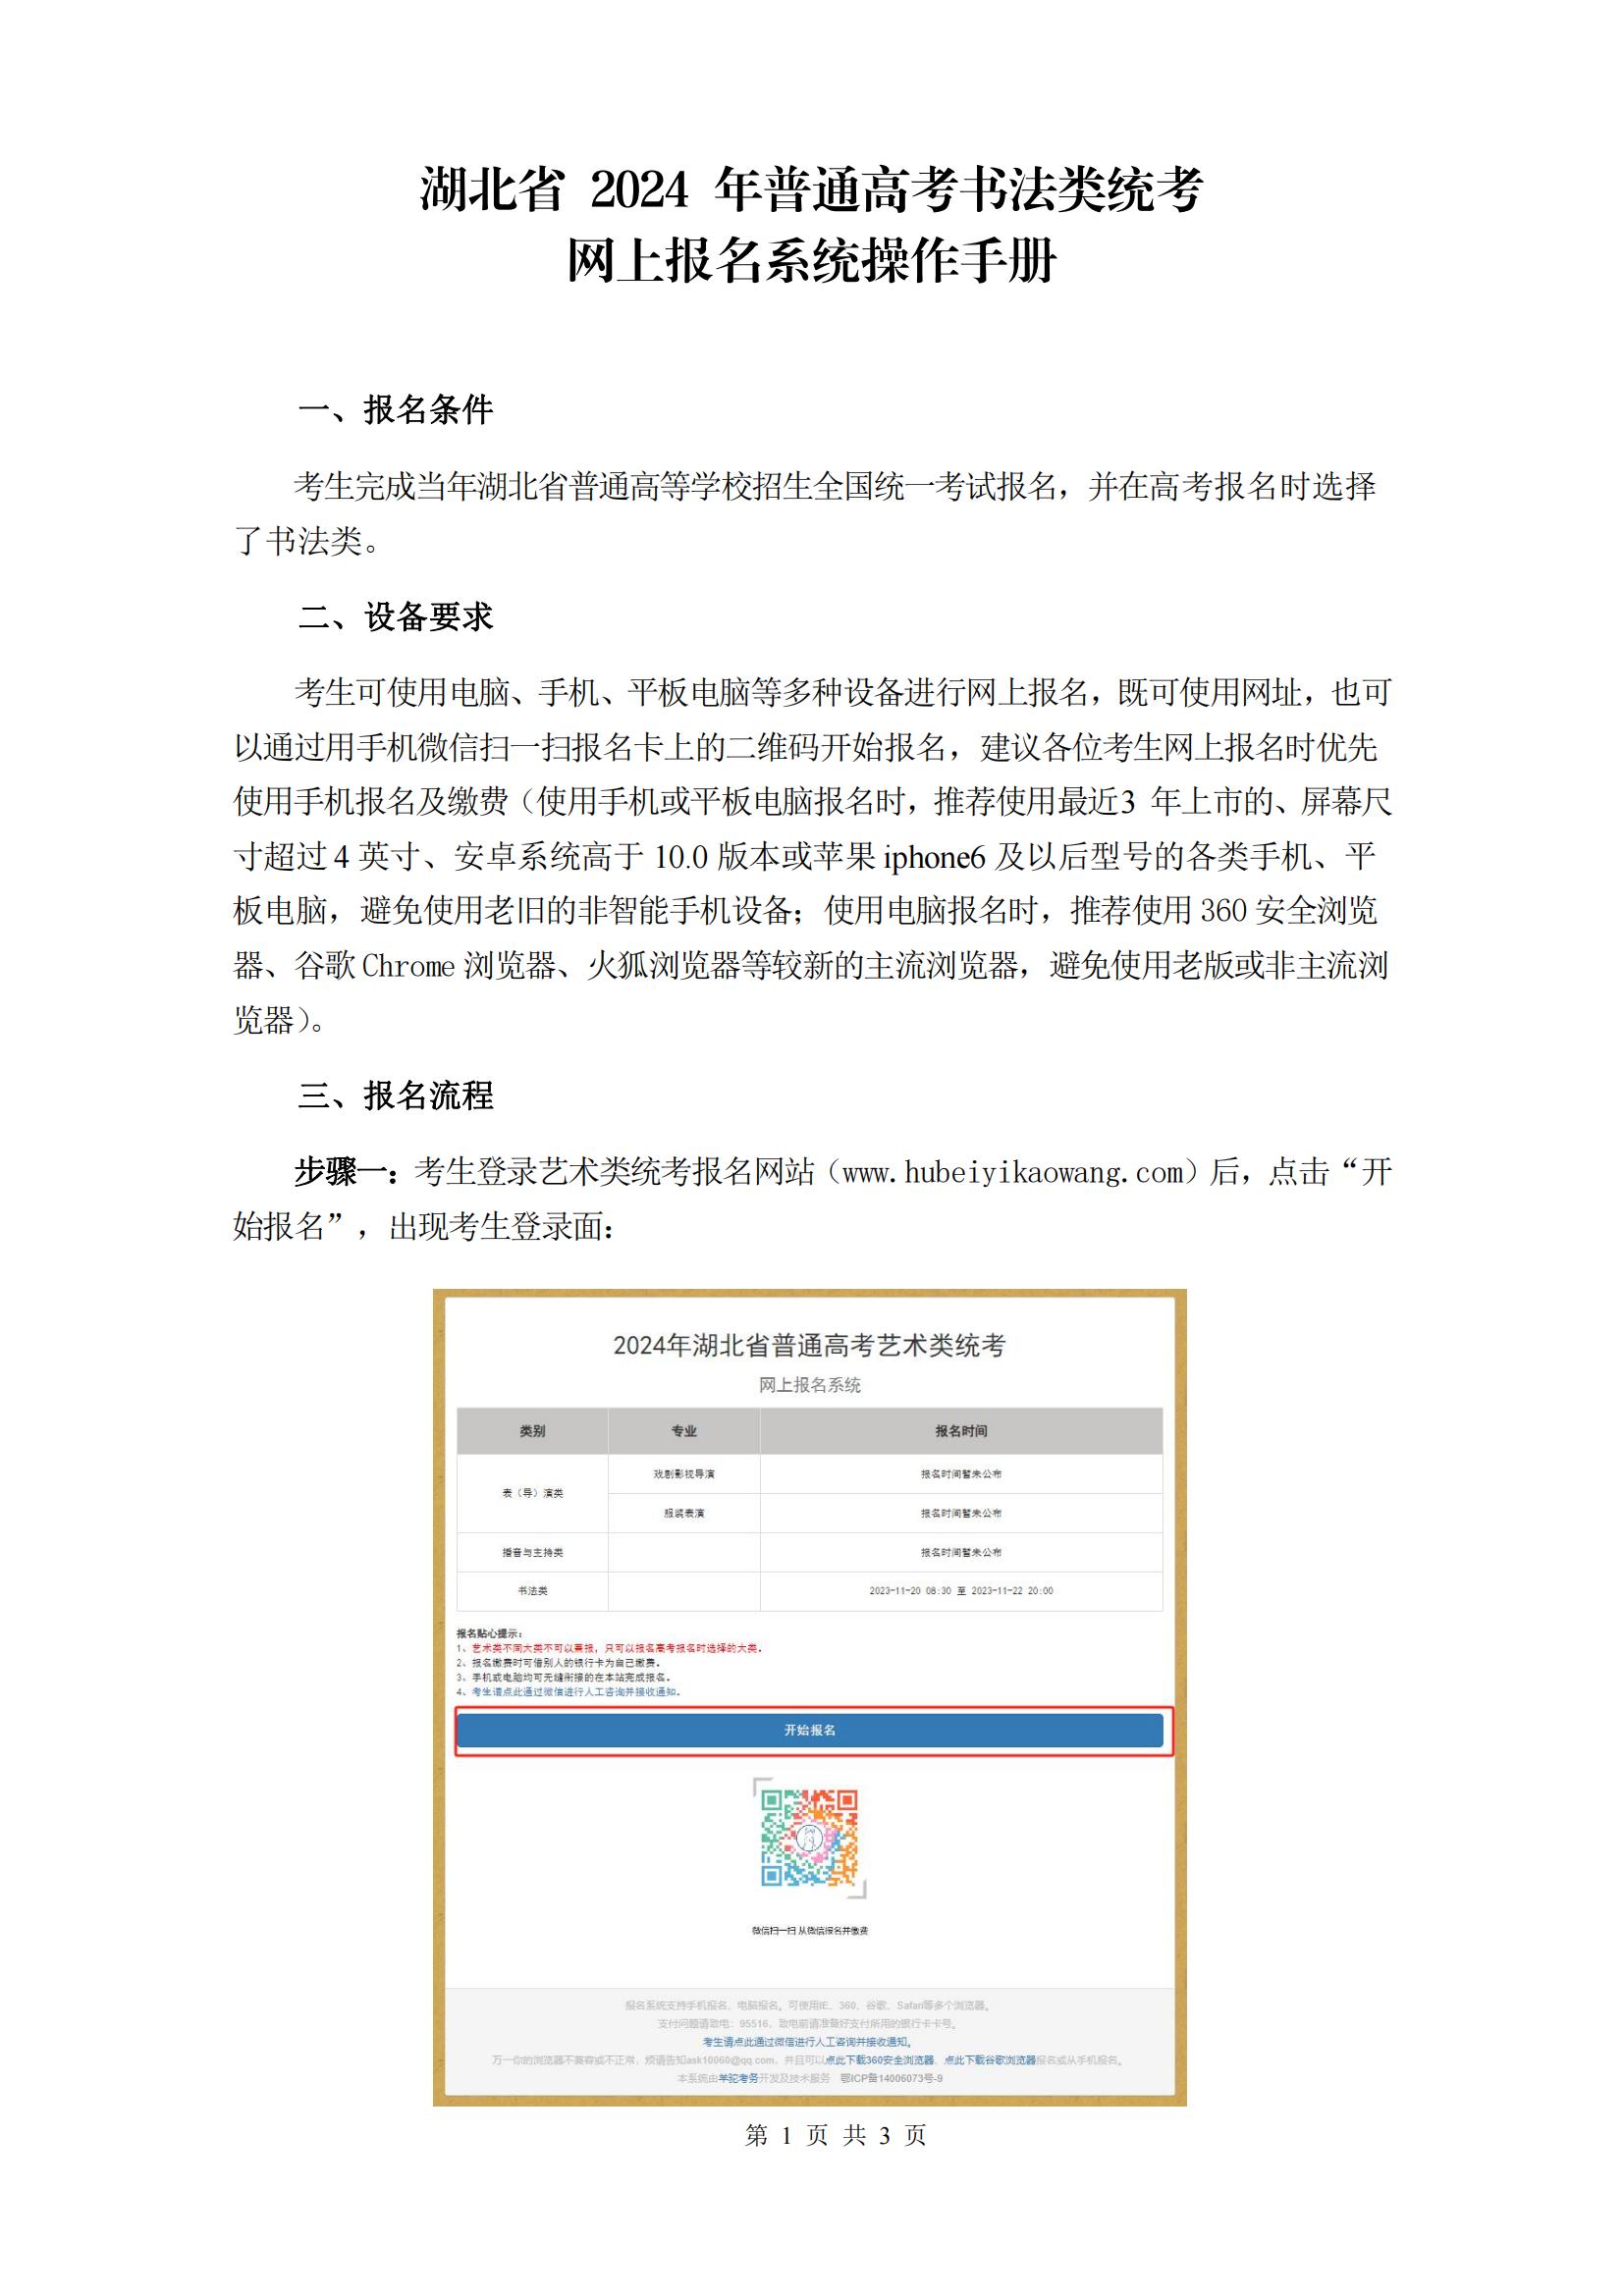 湖北省2024年普通高考书法类统考网上报名系统操作手册_00.jpg